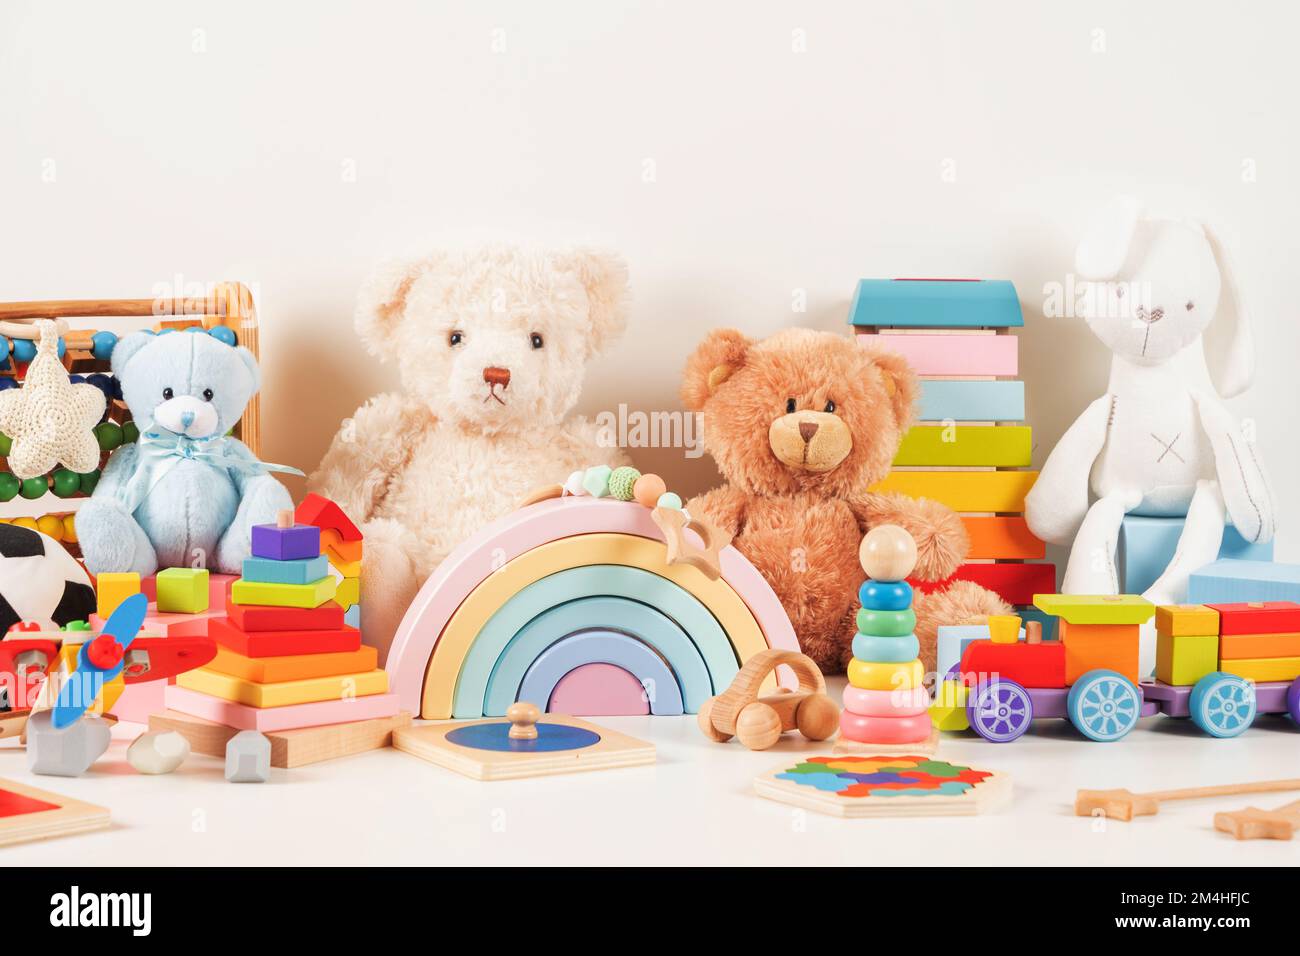 Pädagogische Spielzeugsammlung für Kinder Teddybär, Holzflugzeug, Zug, Abacus, Regenbogen, Pädagogisches Babyspielzeug aus Holz auf weißem Hintergrund. Nachhaltig, umweltfreundlich Stockfoto